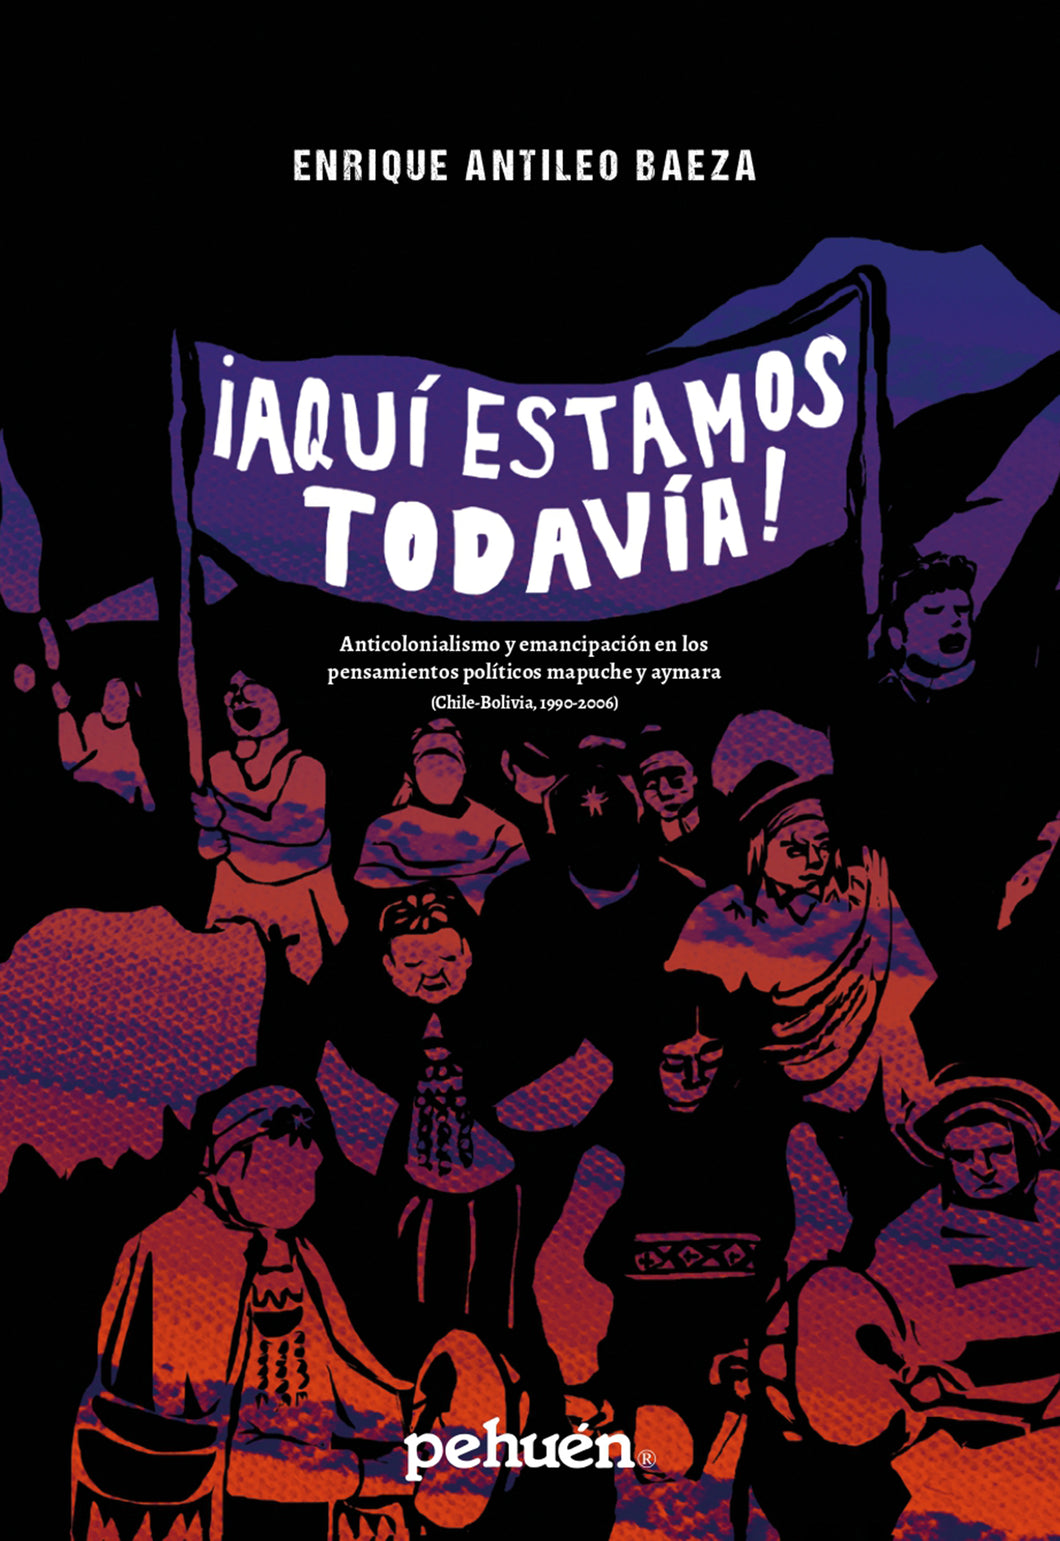 ¡Aquí estamos todavía! Anticolonialismo y emancipación en los pensamientos políticos mapuche y aymara (Chile-Bolivia, 1990-2006)